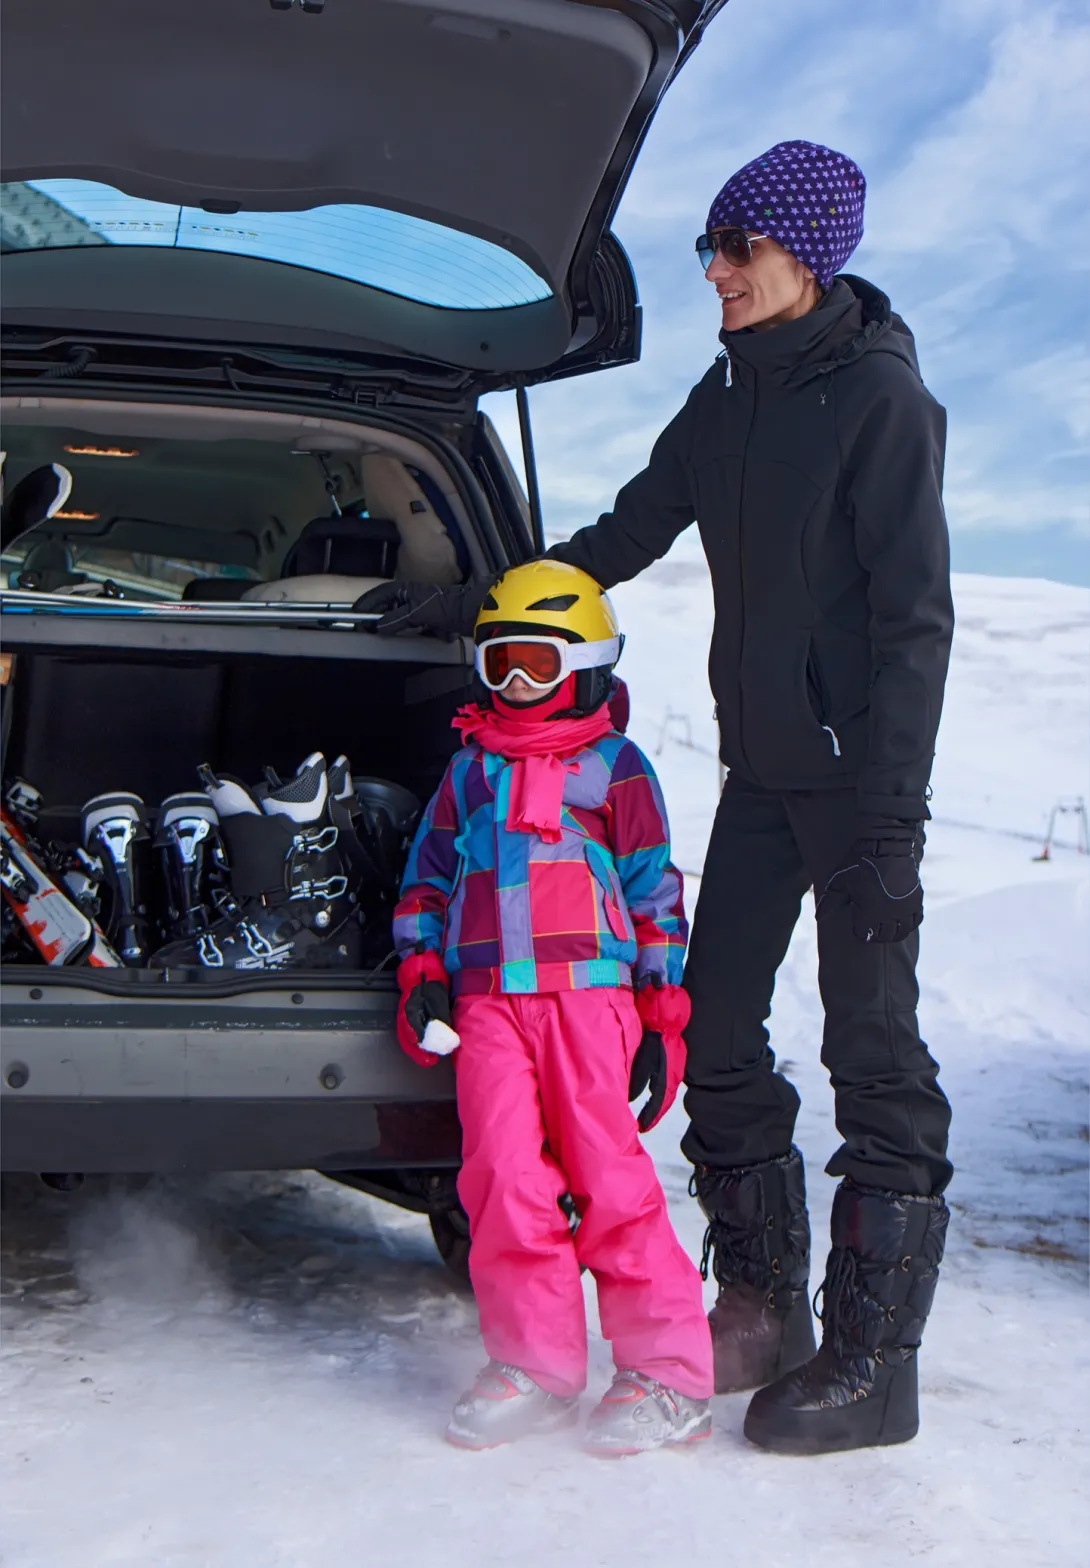 Ski equipment loaded in car